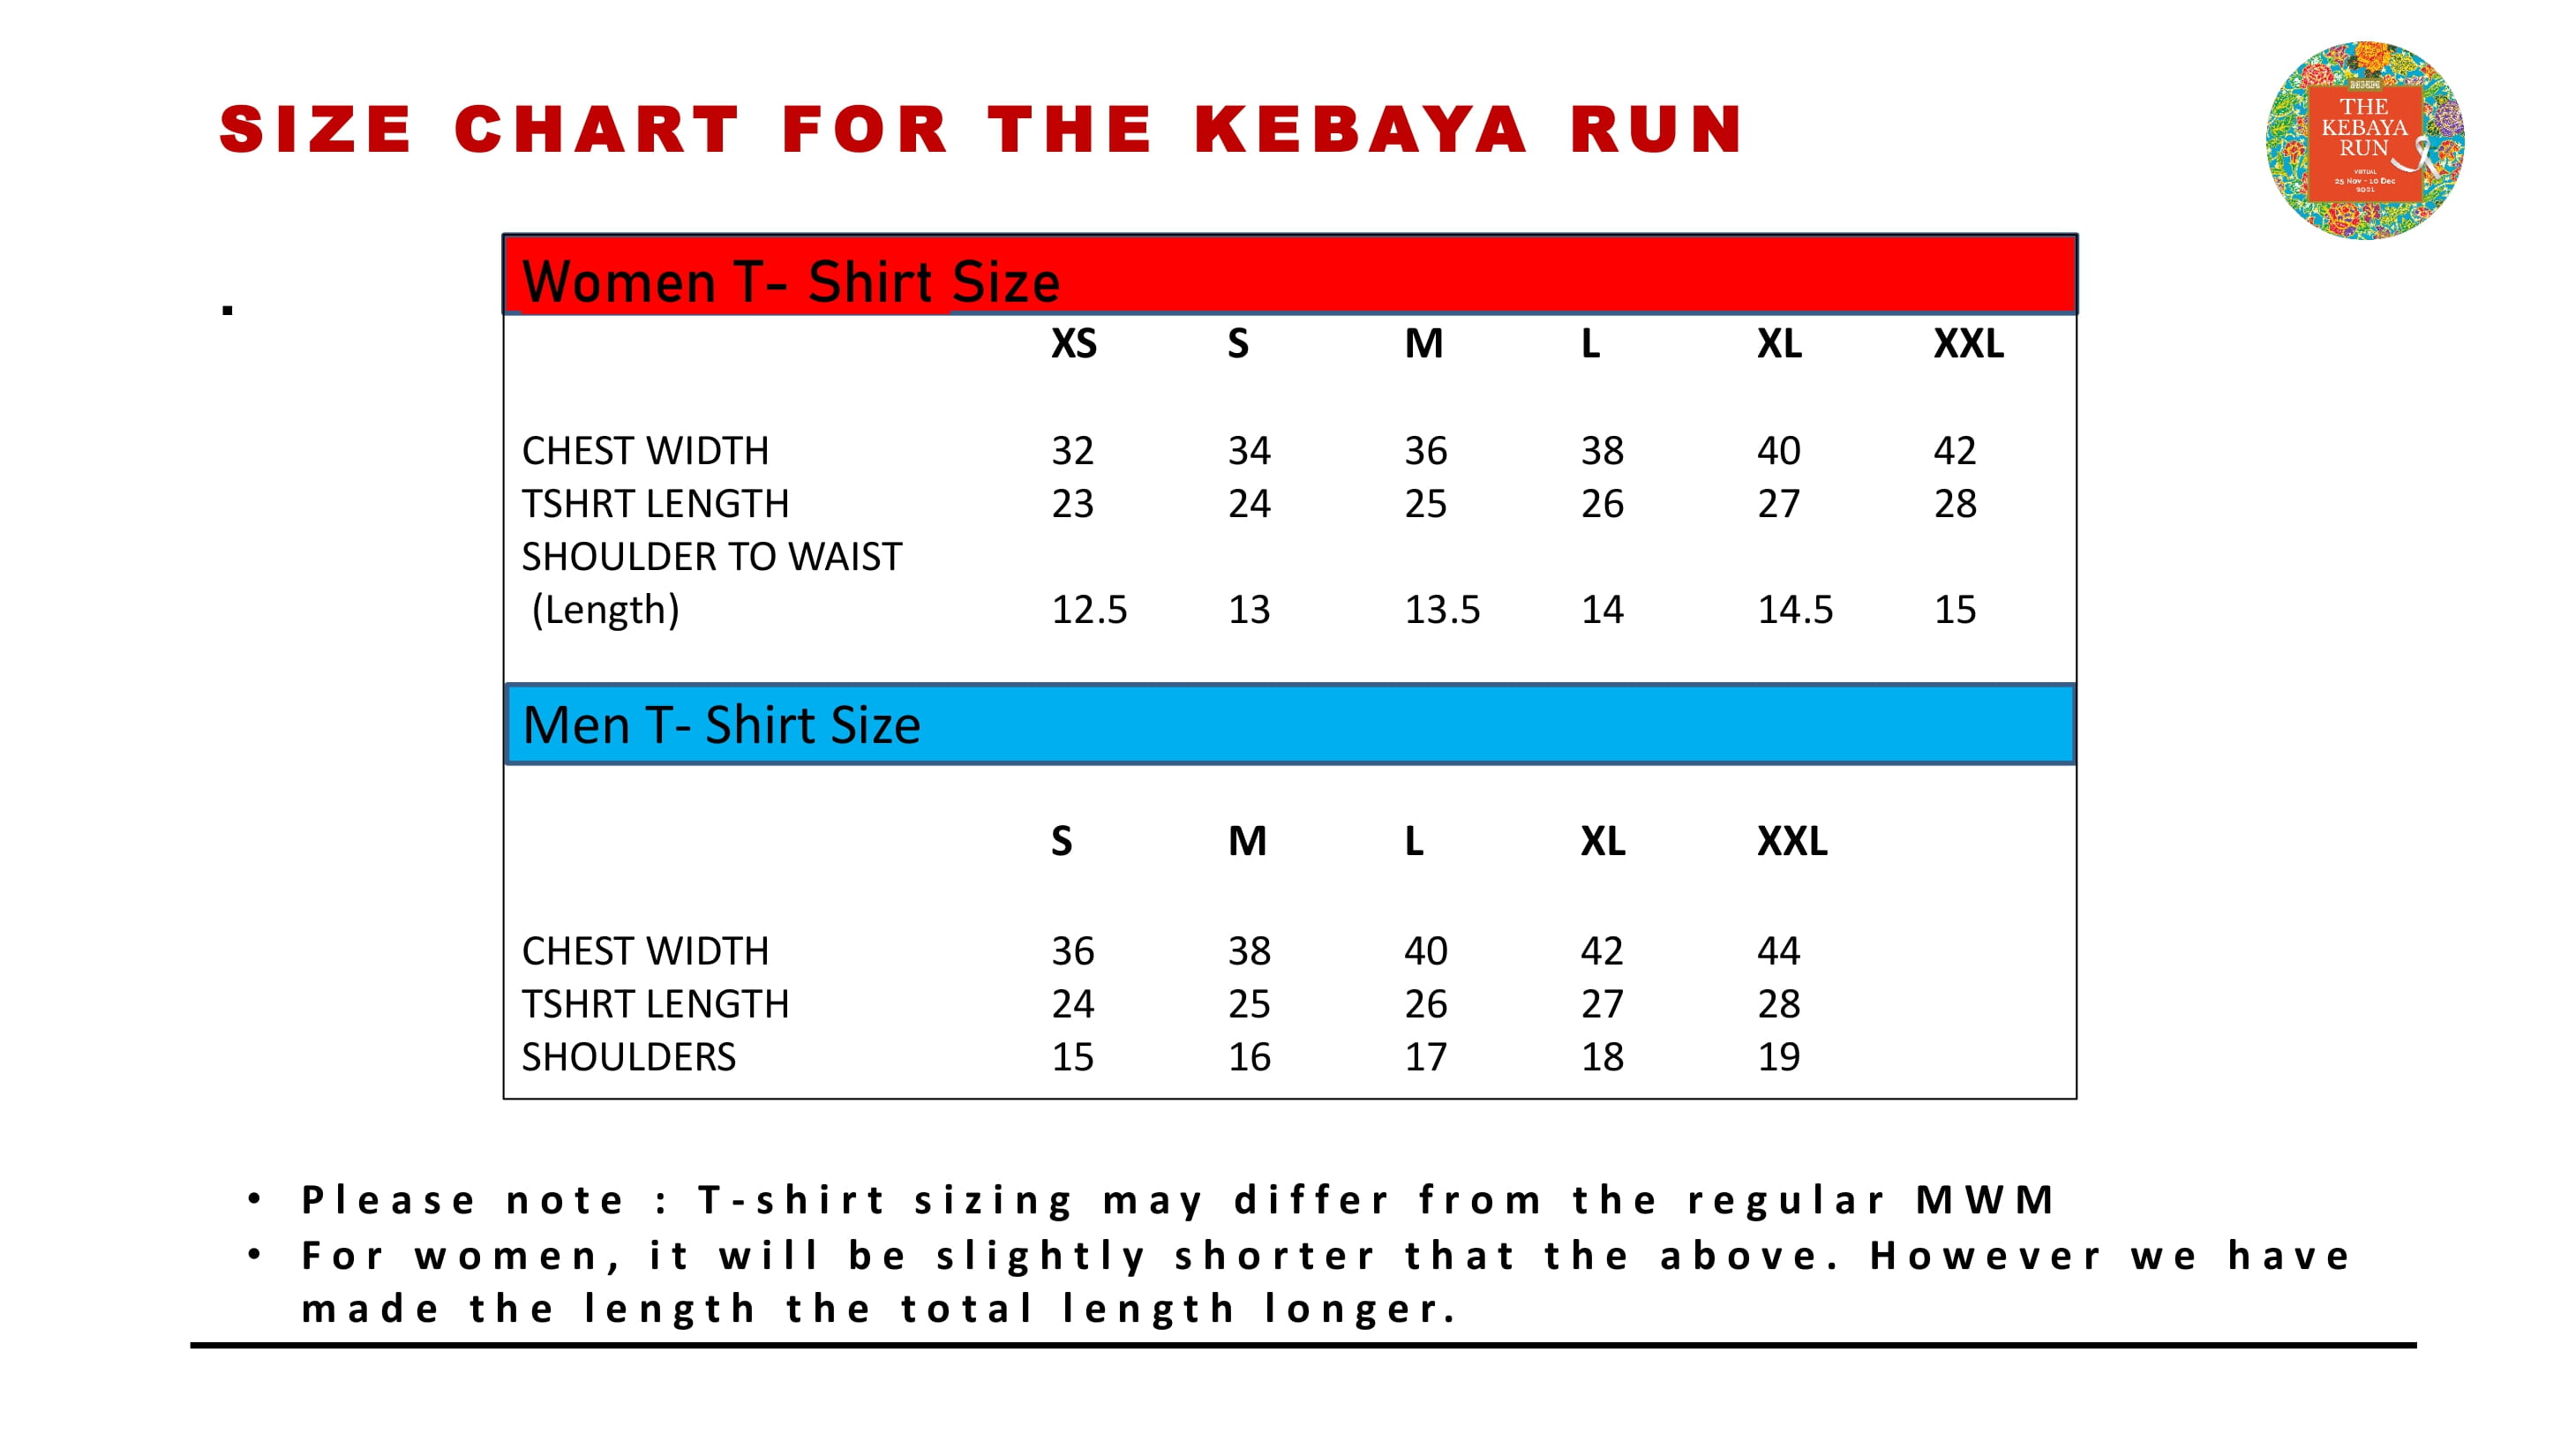 The Kebaya Run 2021